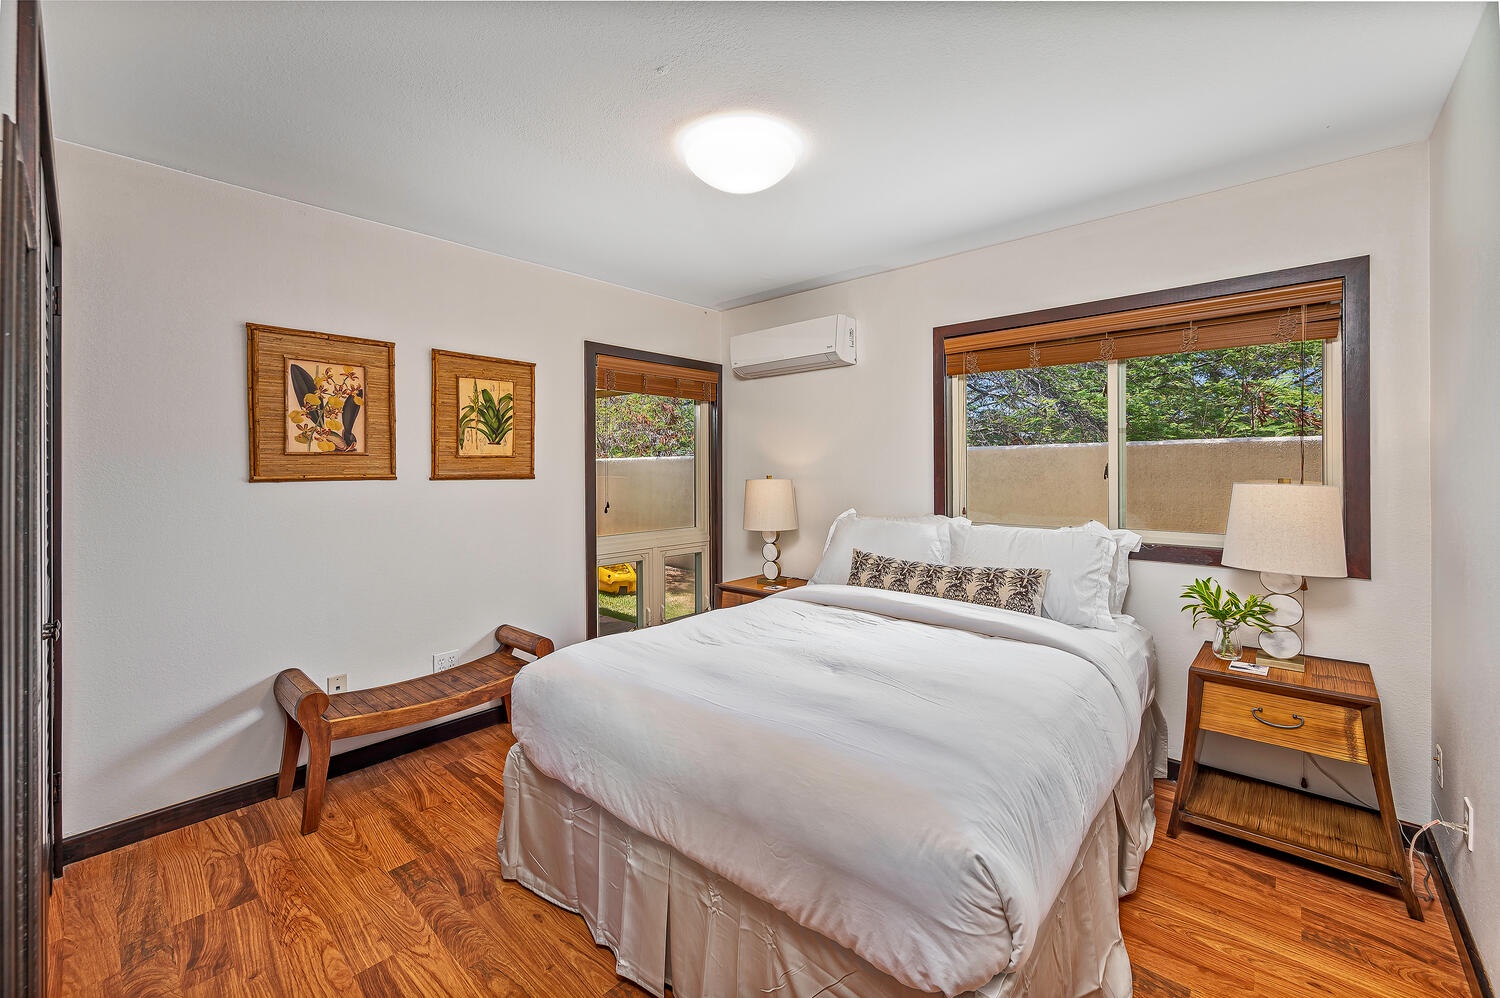 Honolulu Vacation Rentals, Nani Wai - Bedroom 2, queen bed